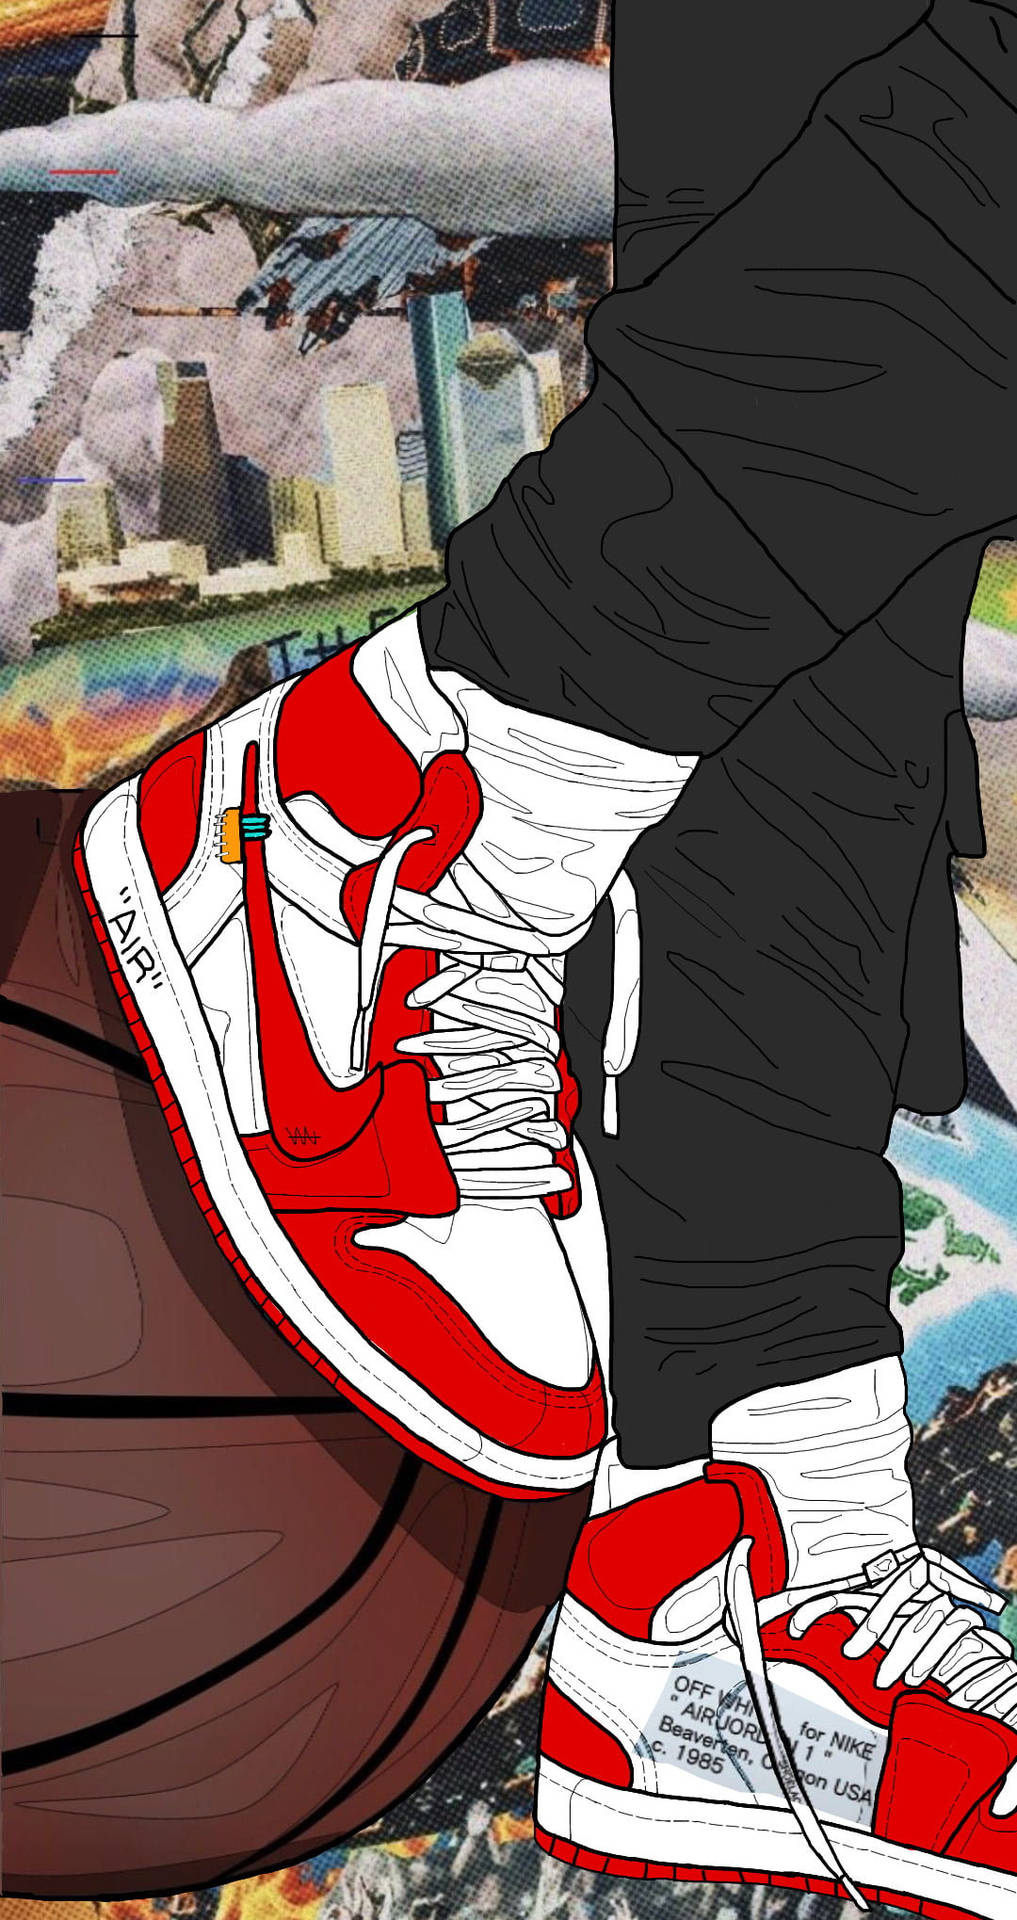 Fantastisktsnyggt Motiv På Nike Jordan 1. Wallpaper